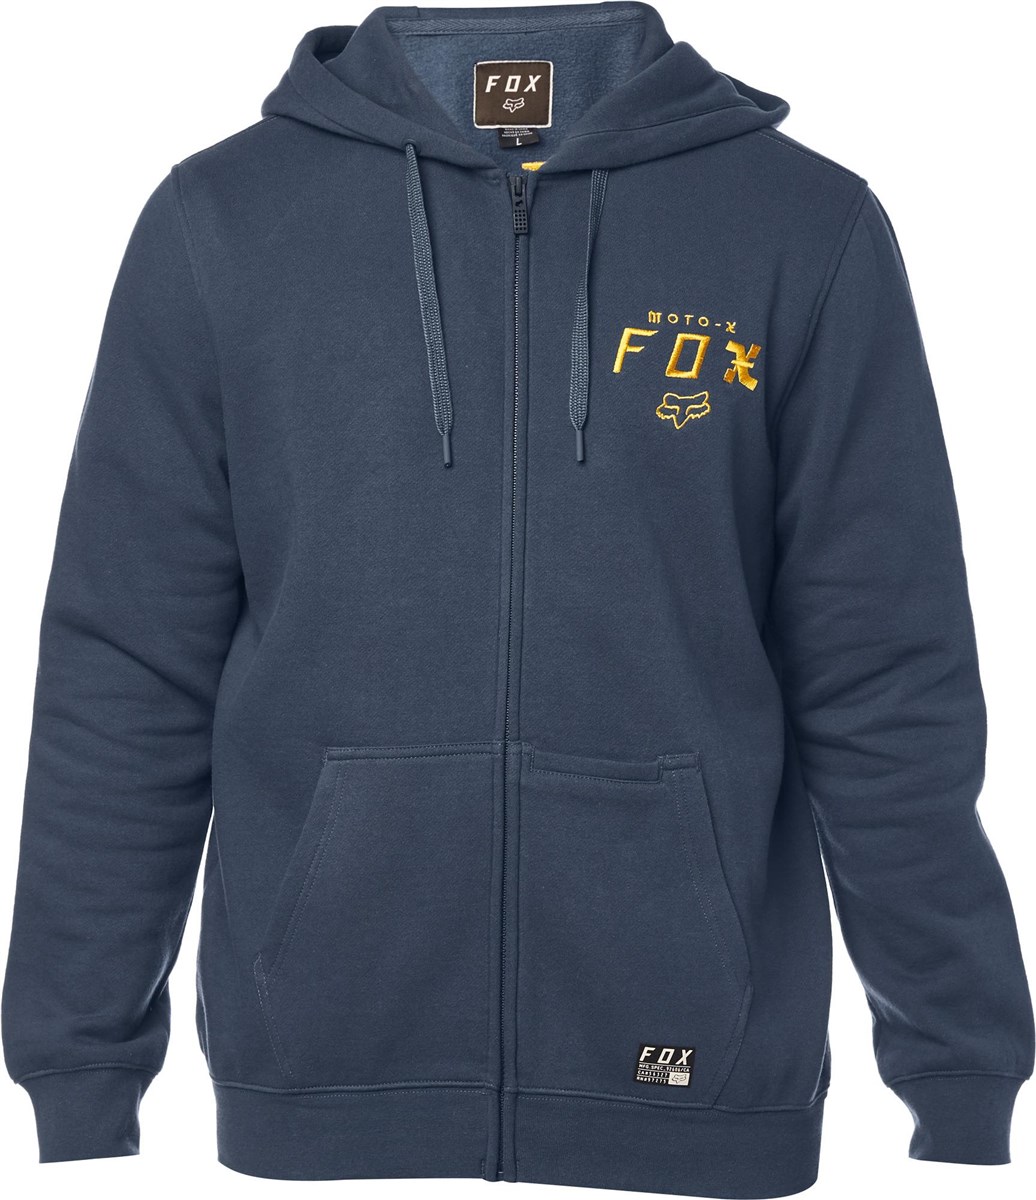 Fox Clothing Darkside Zip Fleece product image